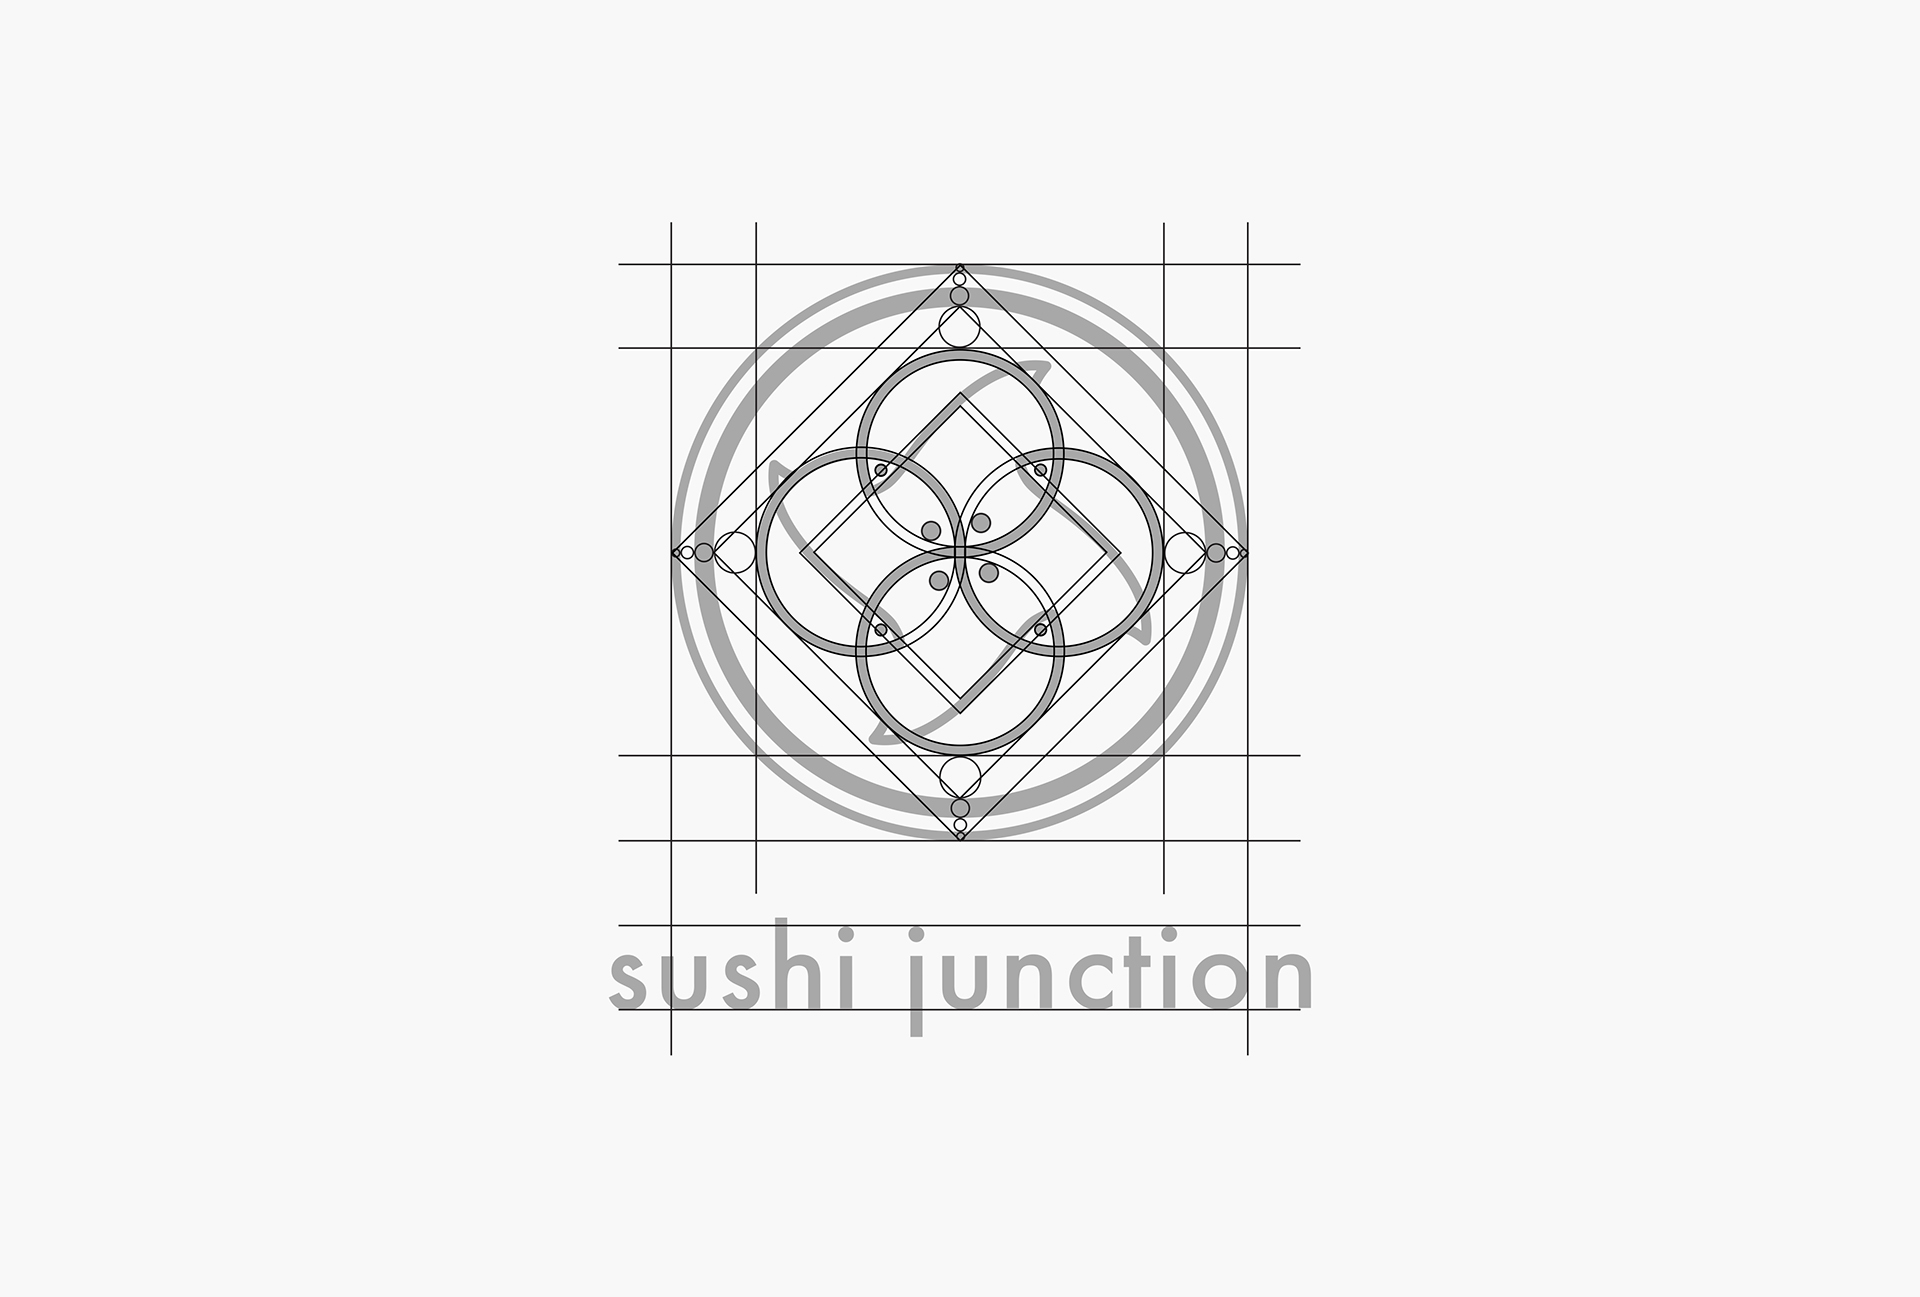 Sushi Junction日式餐厅视觉识别设计